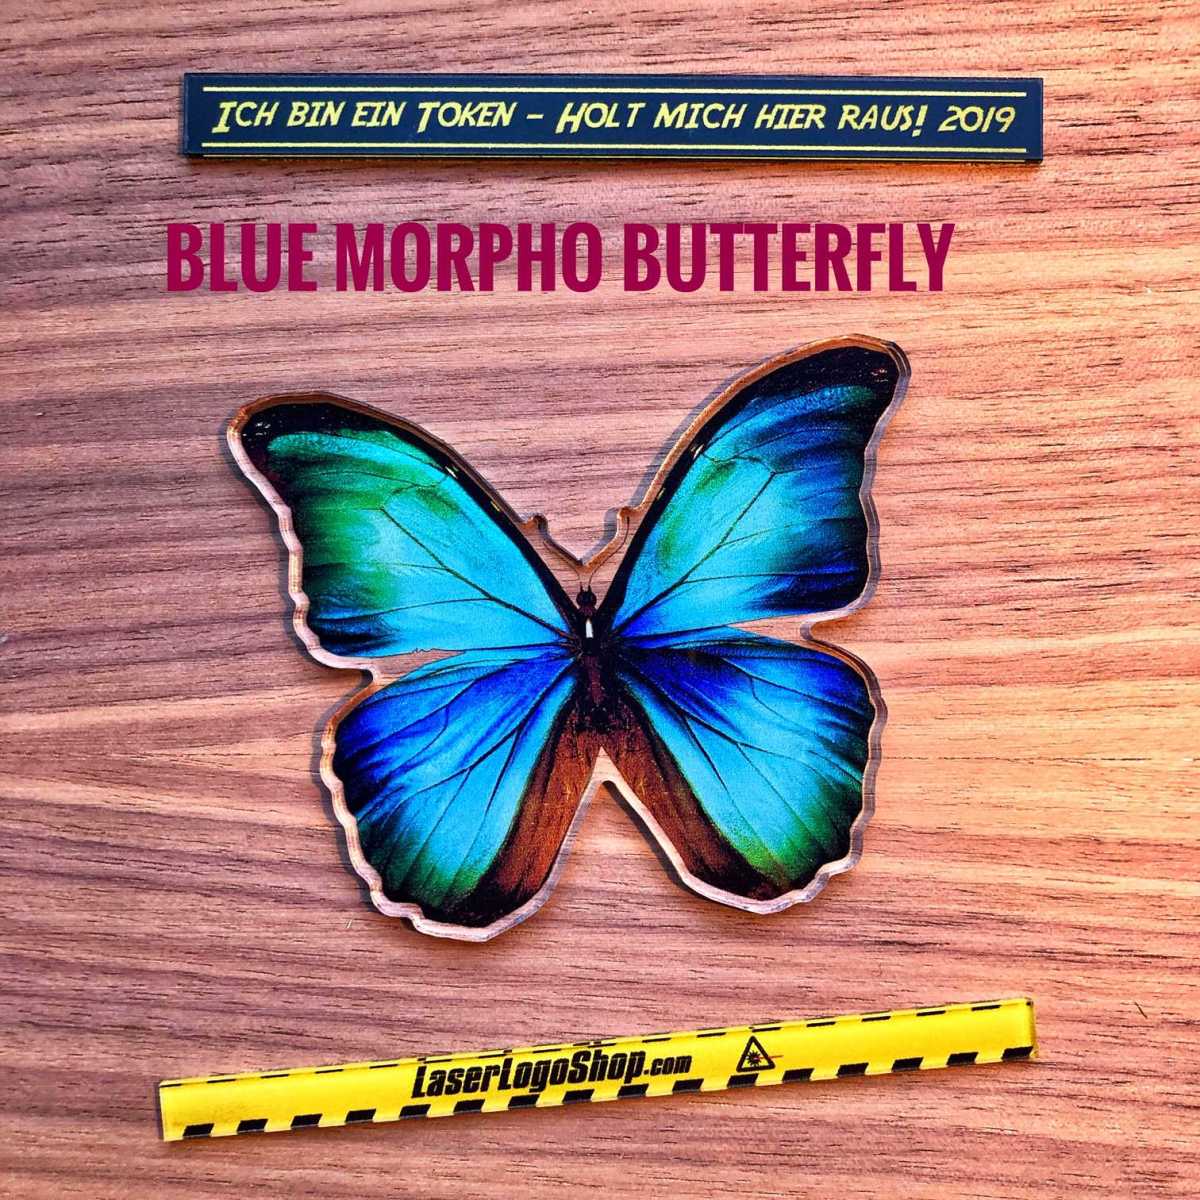 Dschungel 2019 - "Blue Morpho Butterfly"